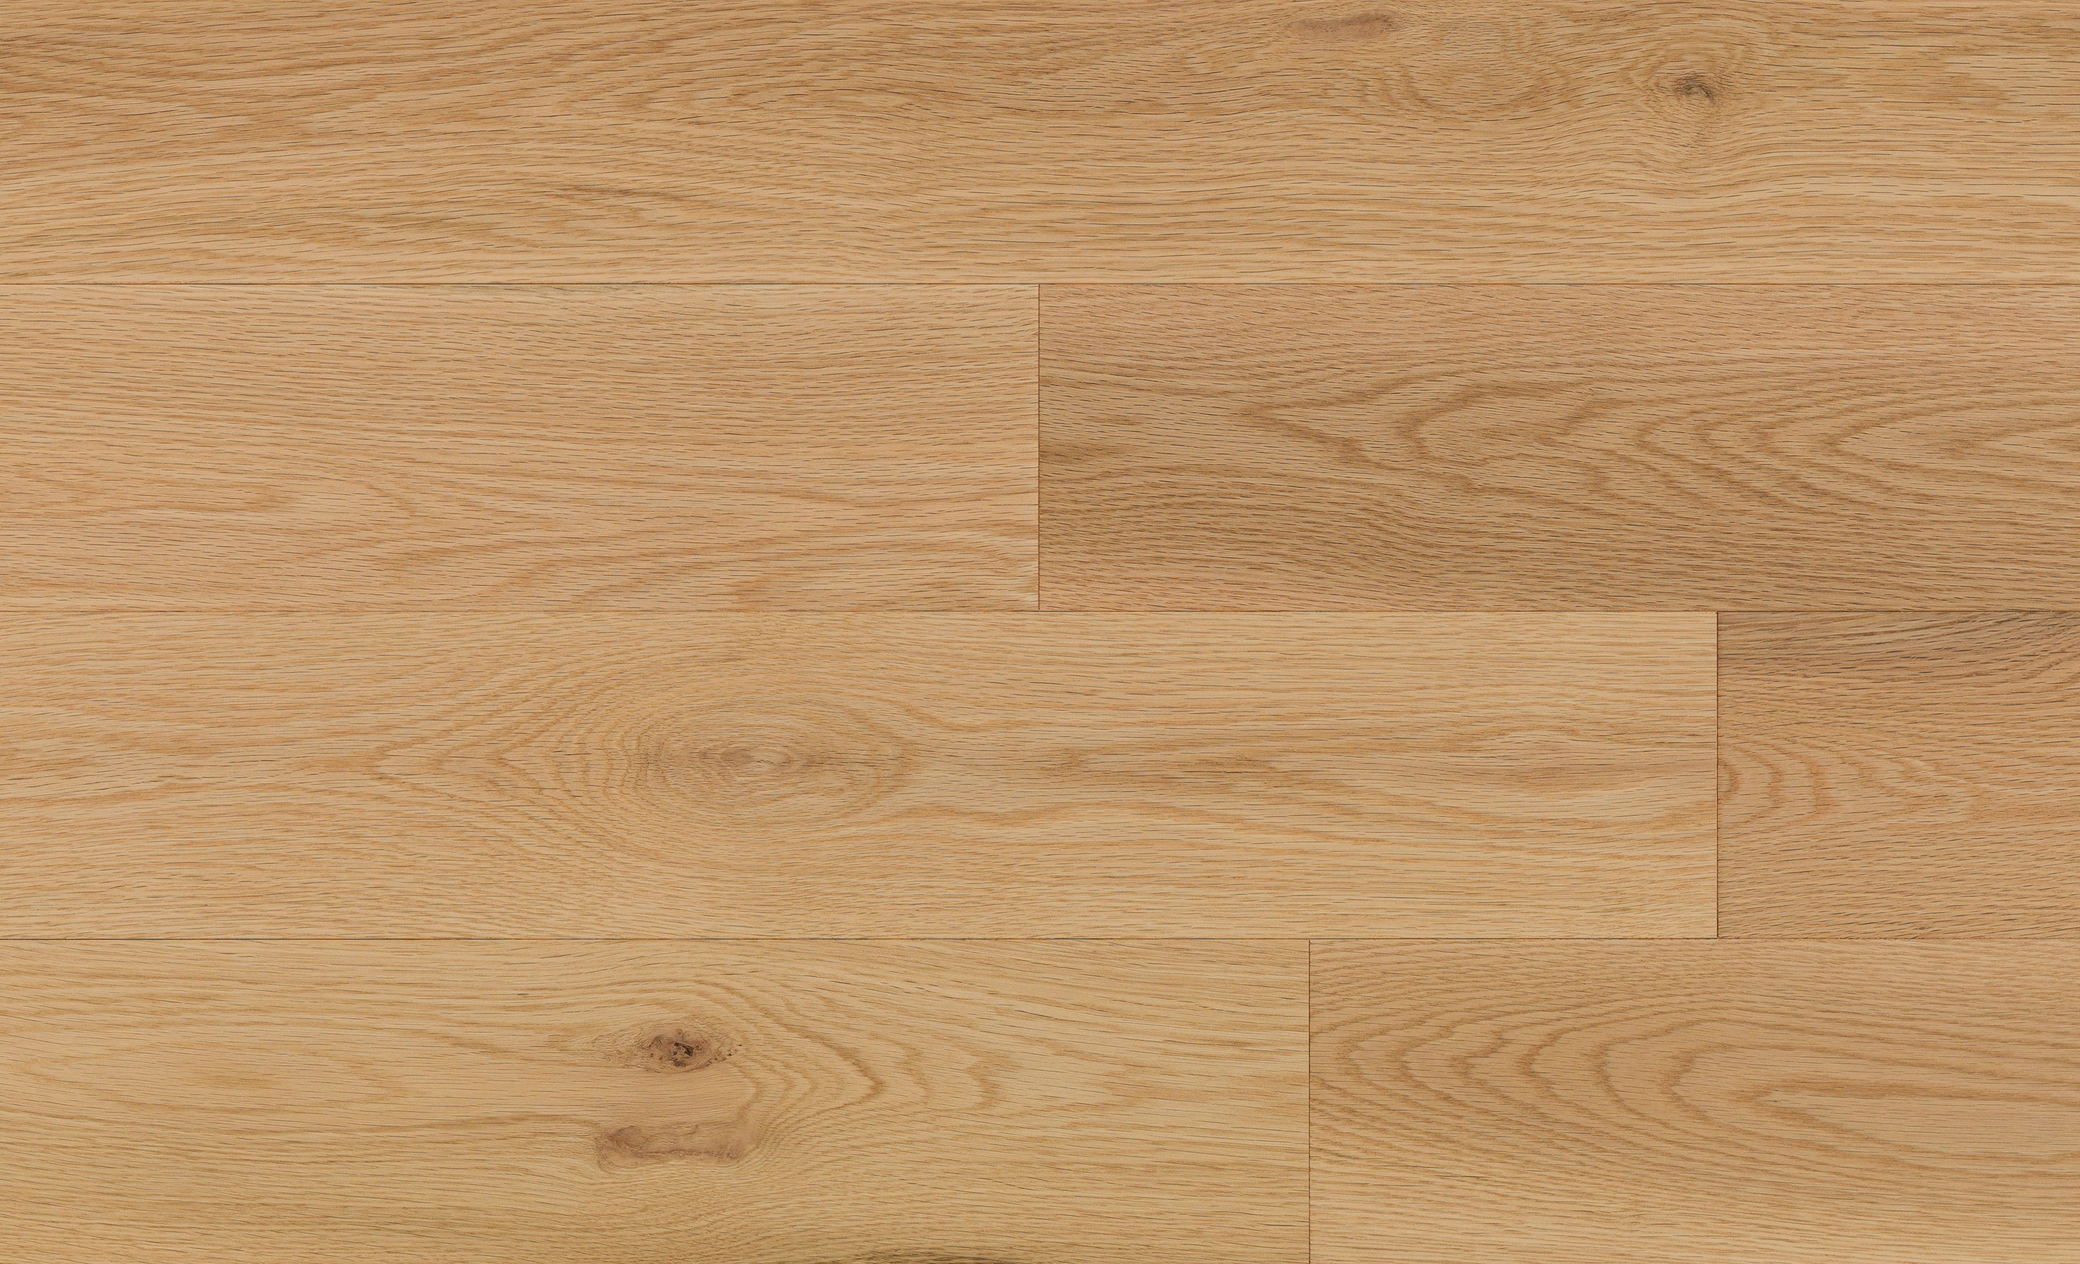 Mercier Flooring Red Oak Engineered 6 1/2